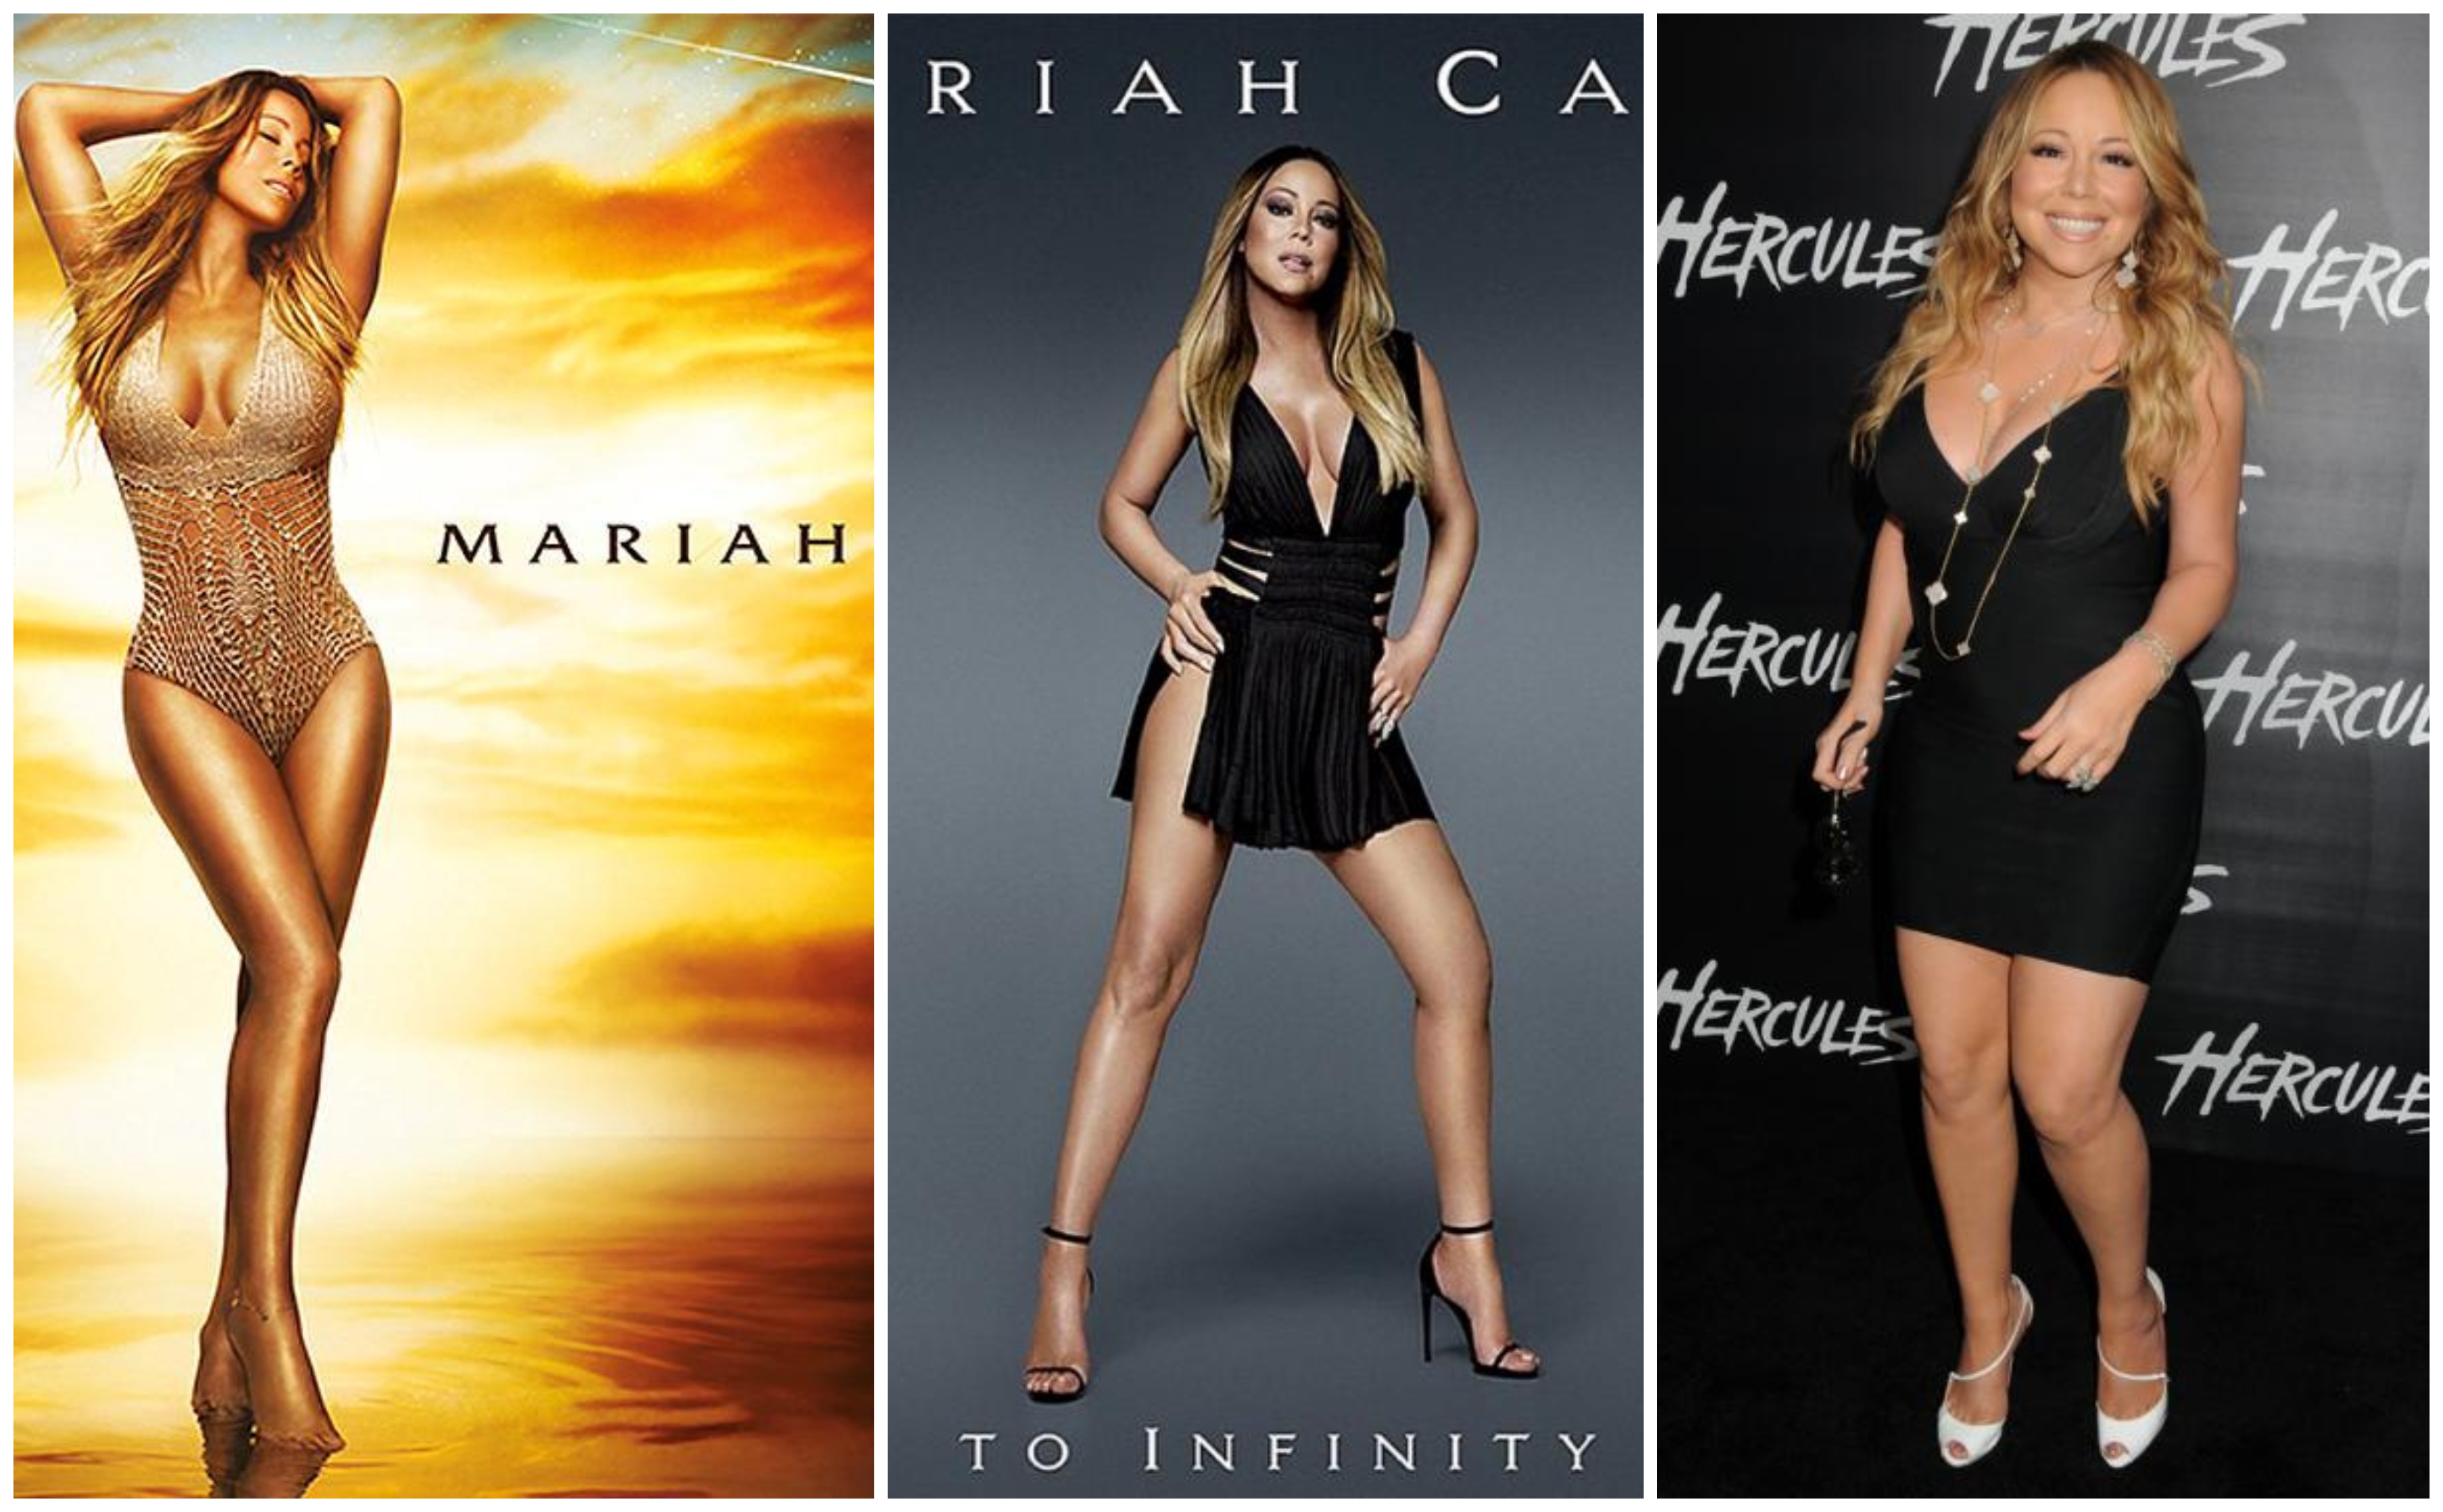 Mariah Carey az egyik legnagyobb díva, ezért talán nem meglepő, hogy megvannak az elvárásai az image-ével kapcsolatban. Lehet, hogy egy kicsit közelebb kéne helyezni a realitáshoz?